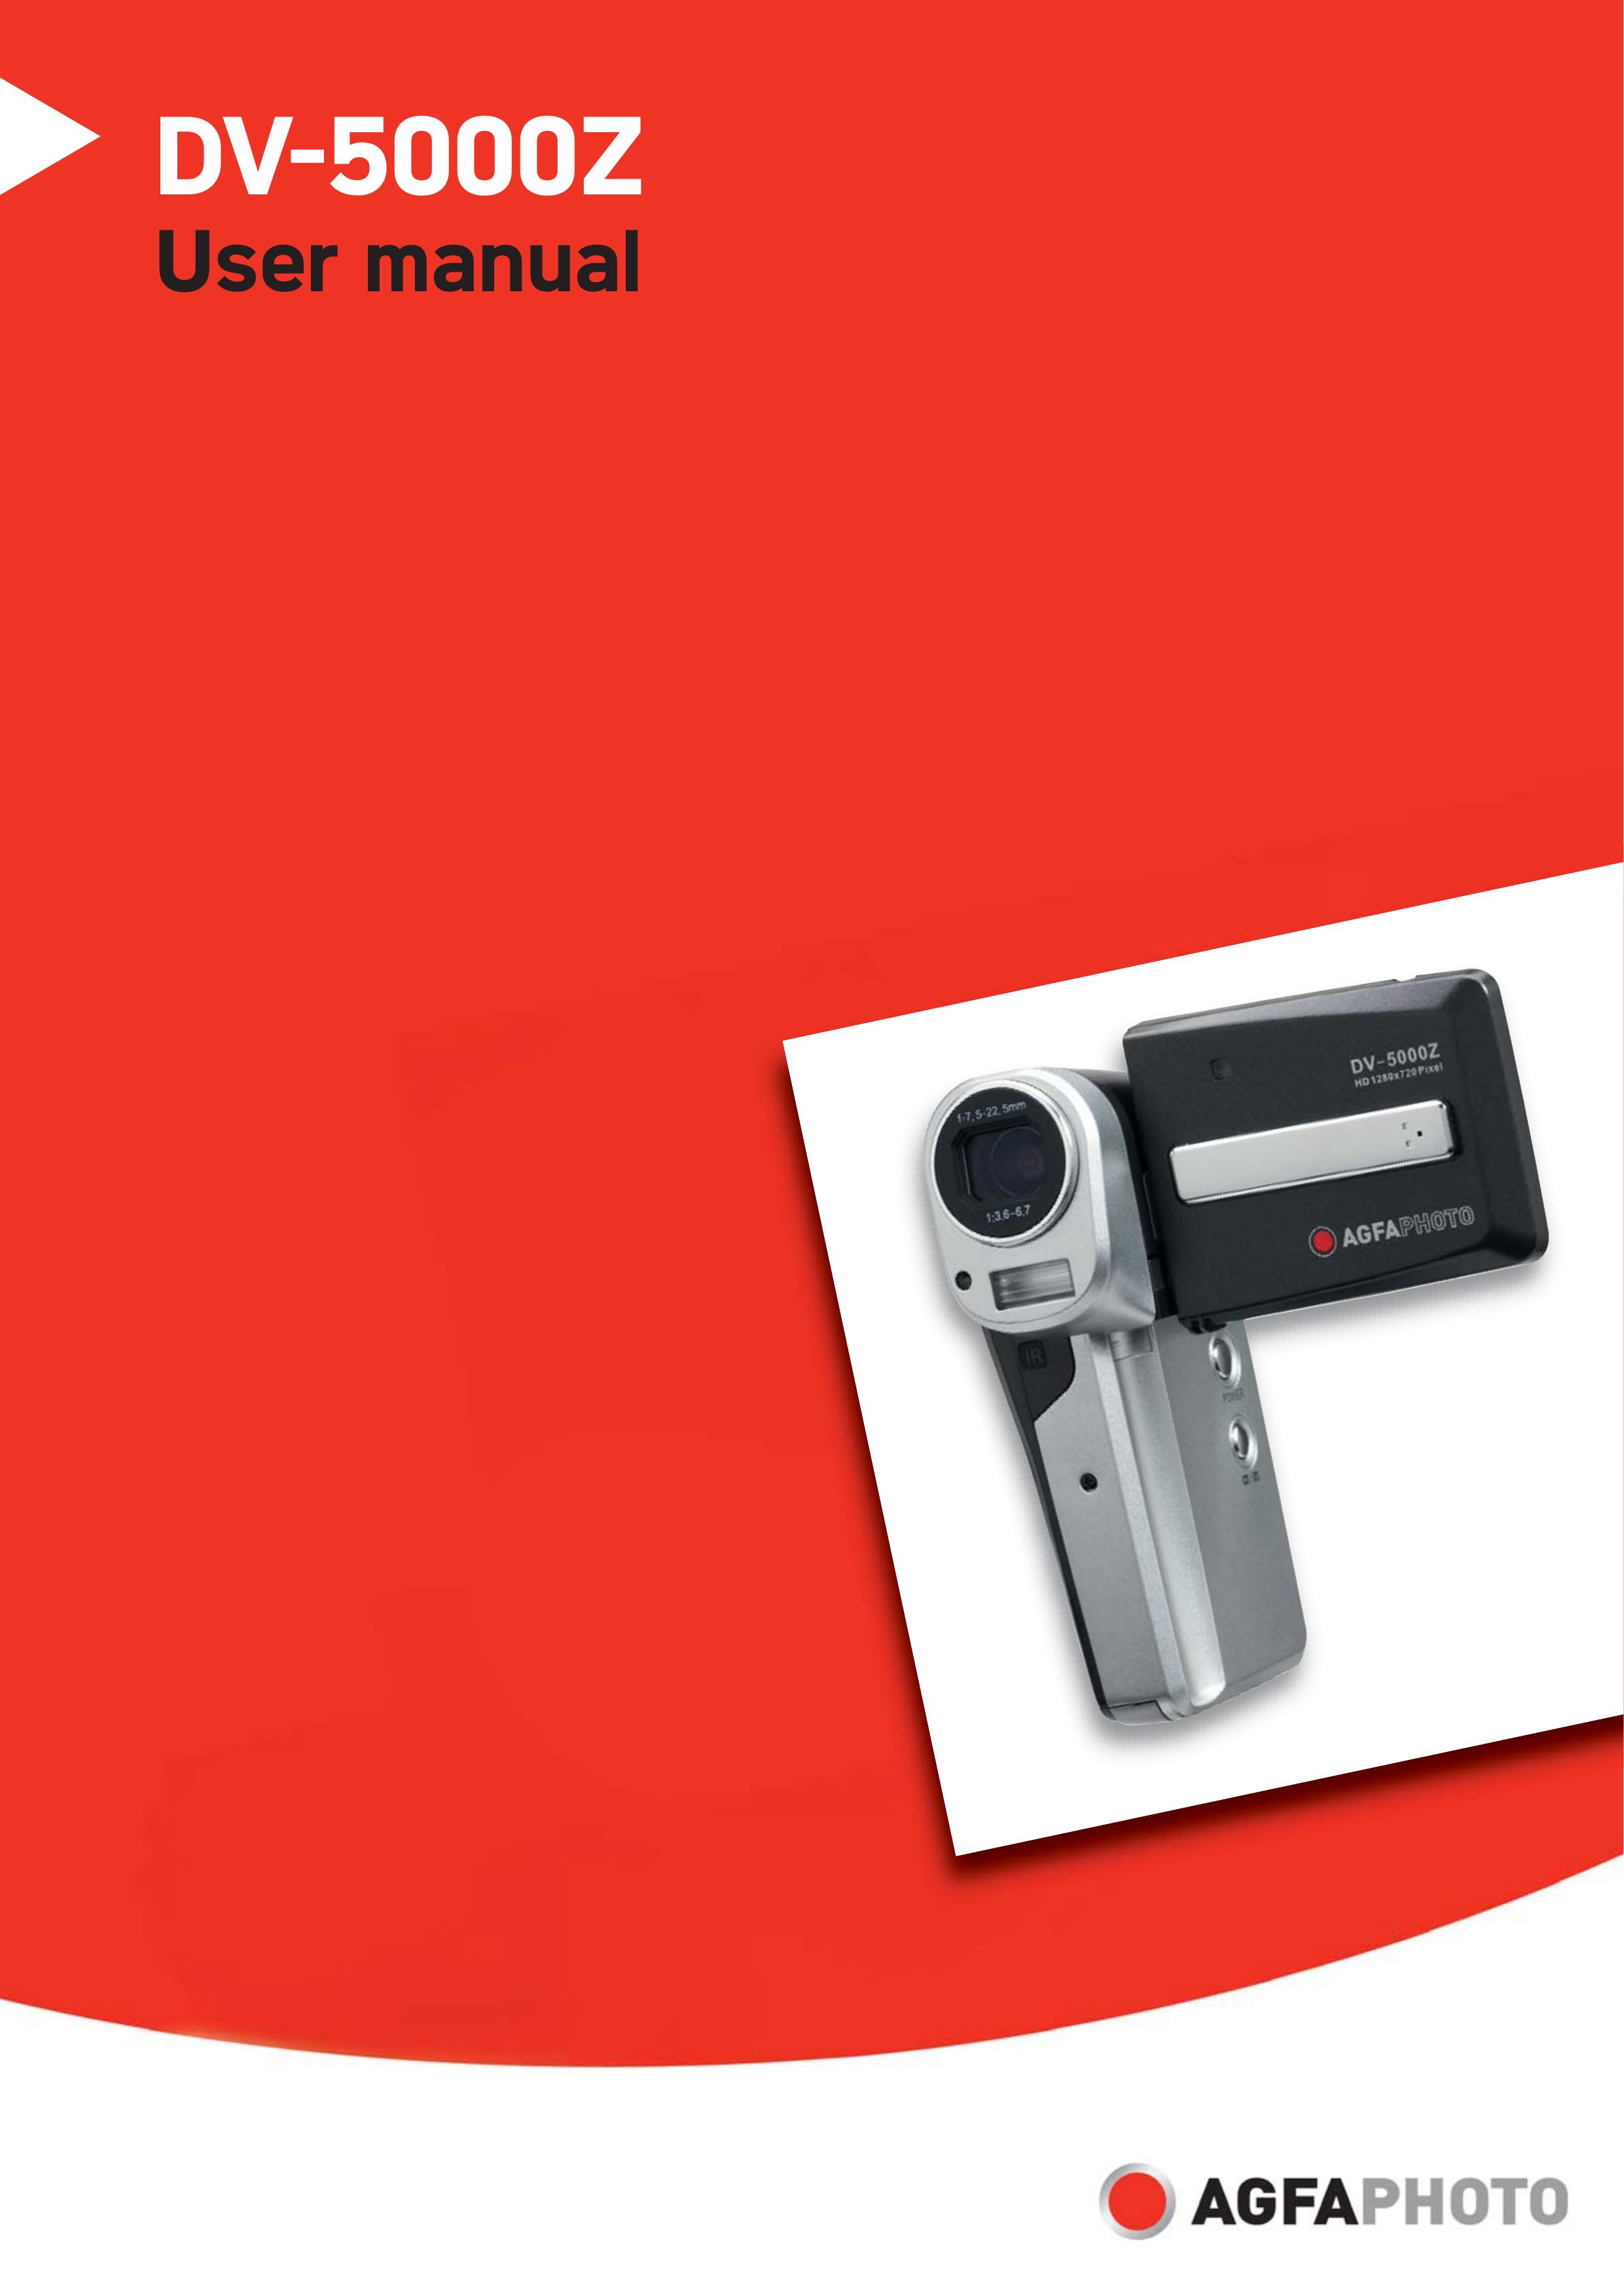 AGFA DV-5000Z Digital Camera User Manual